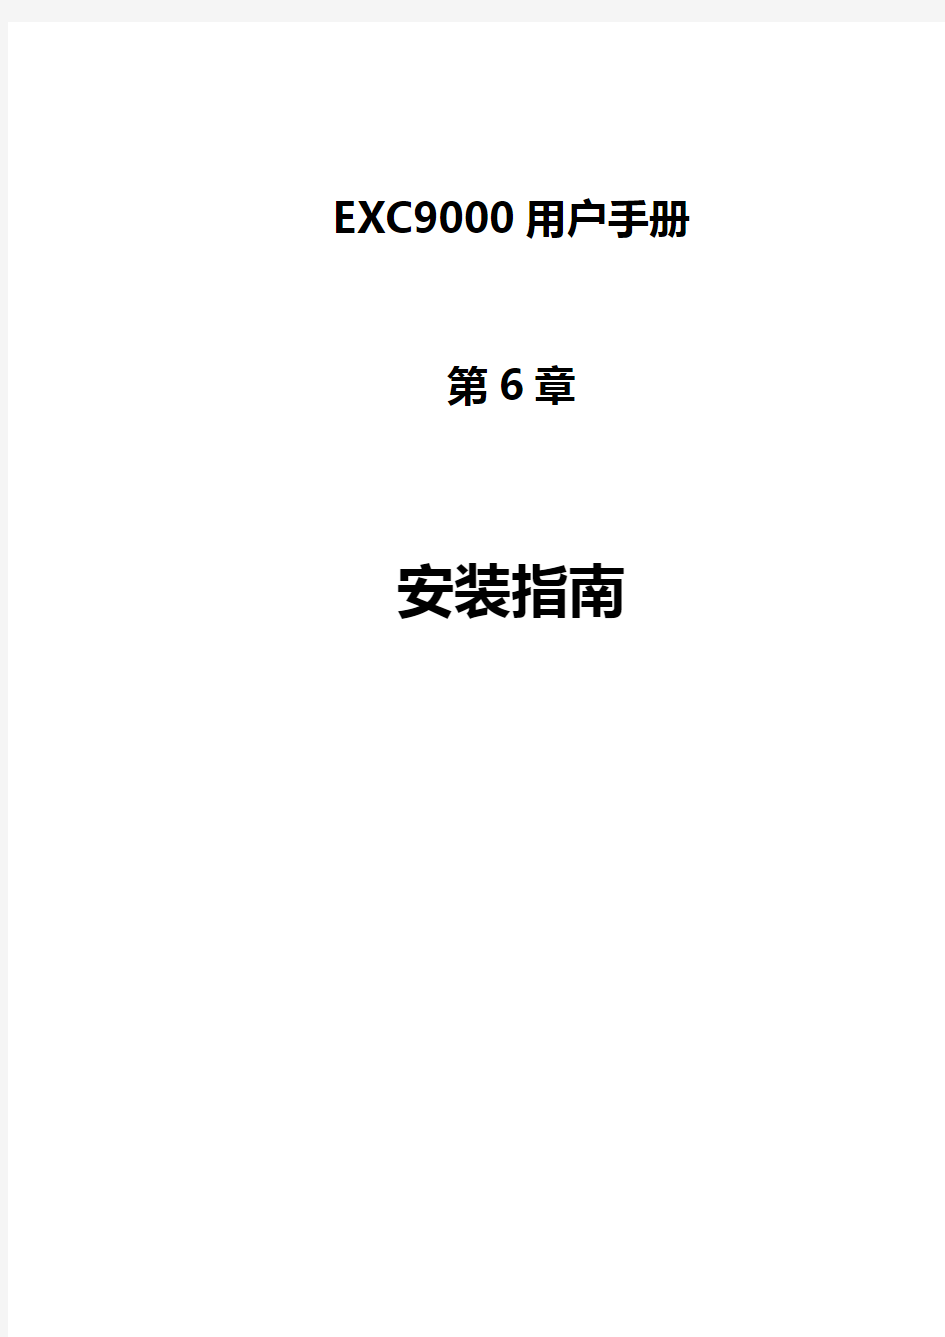 六、EXC9000型全数字式静态励磁系统安装指南